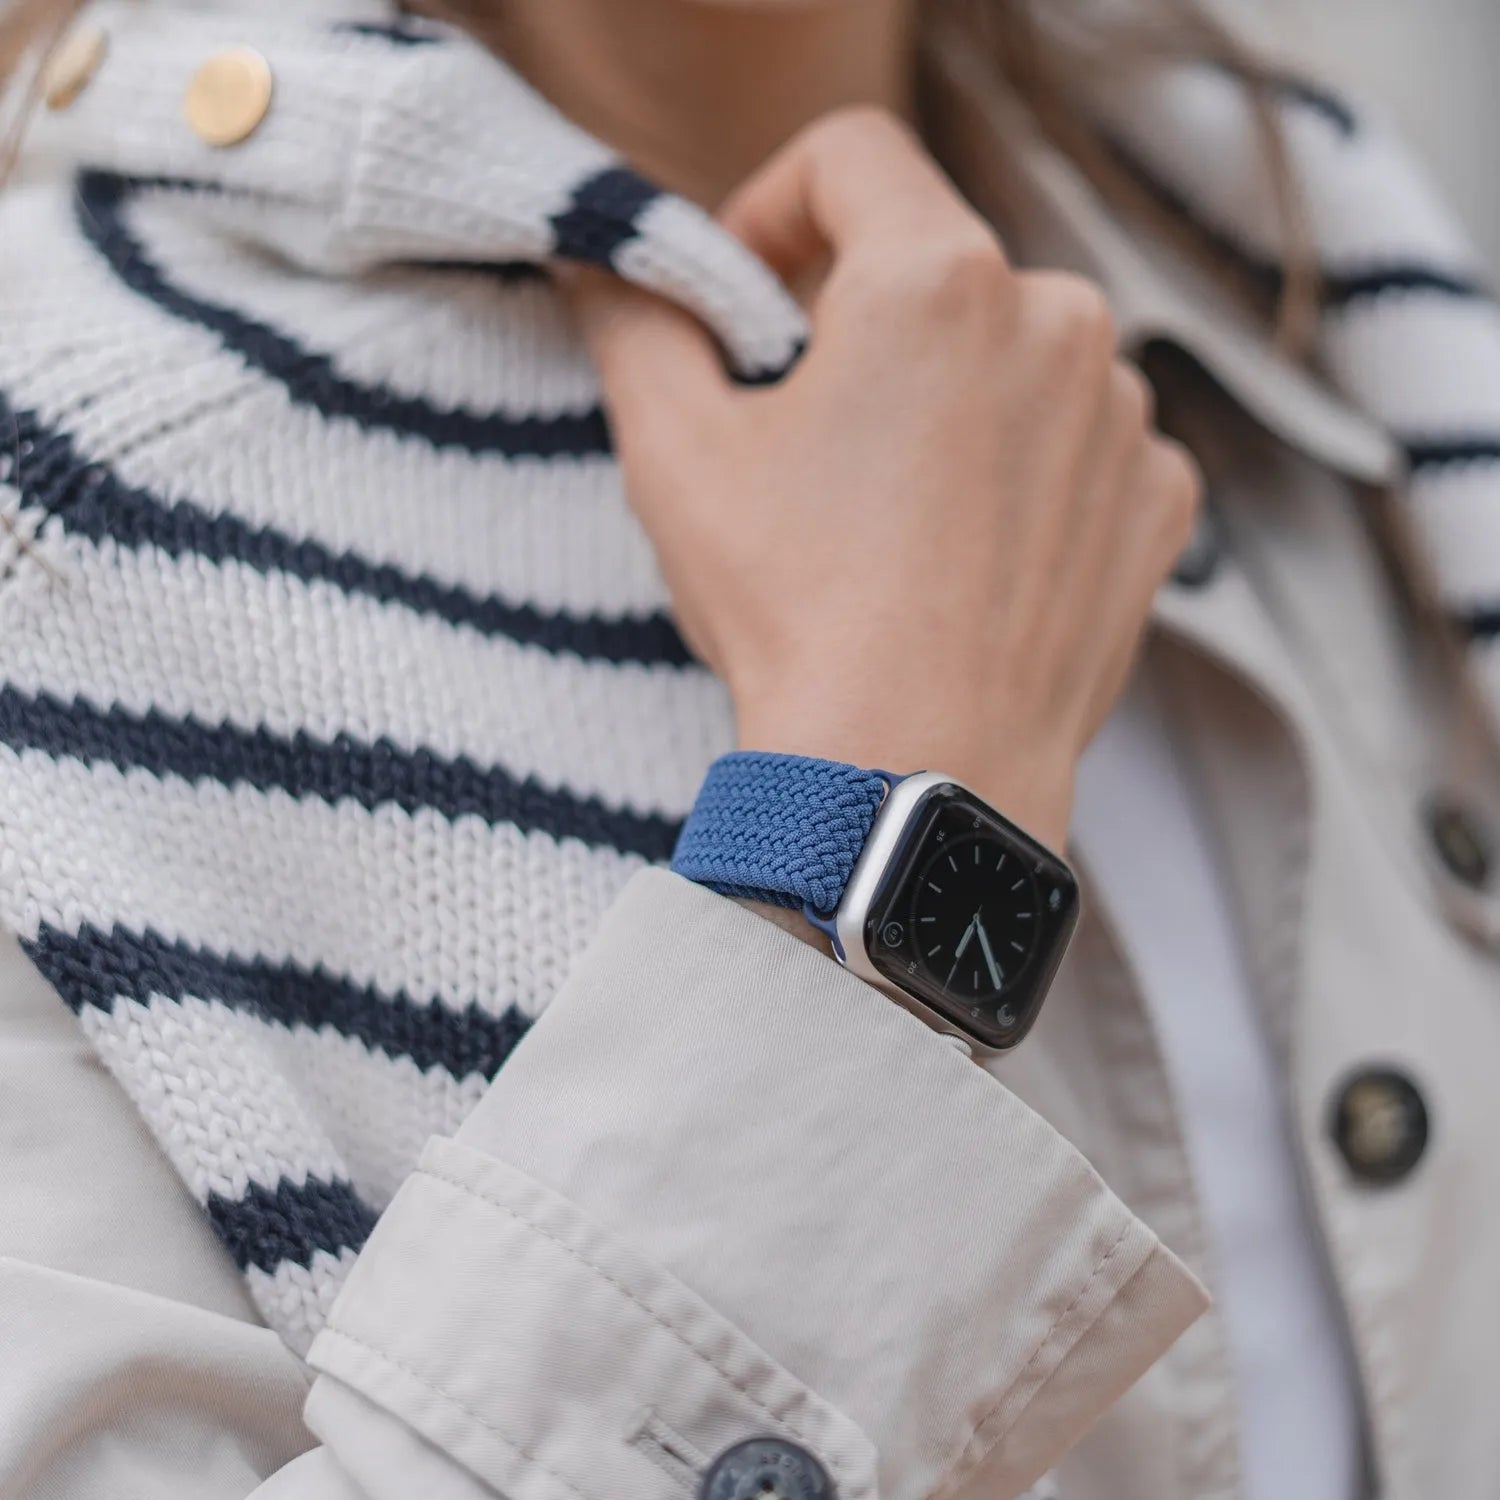 Adjustable Apple Watch Braided Loop#color_blue